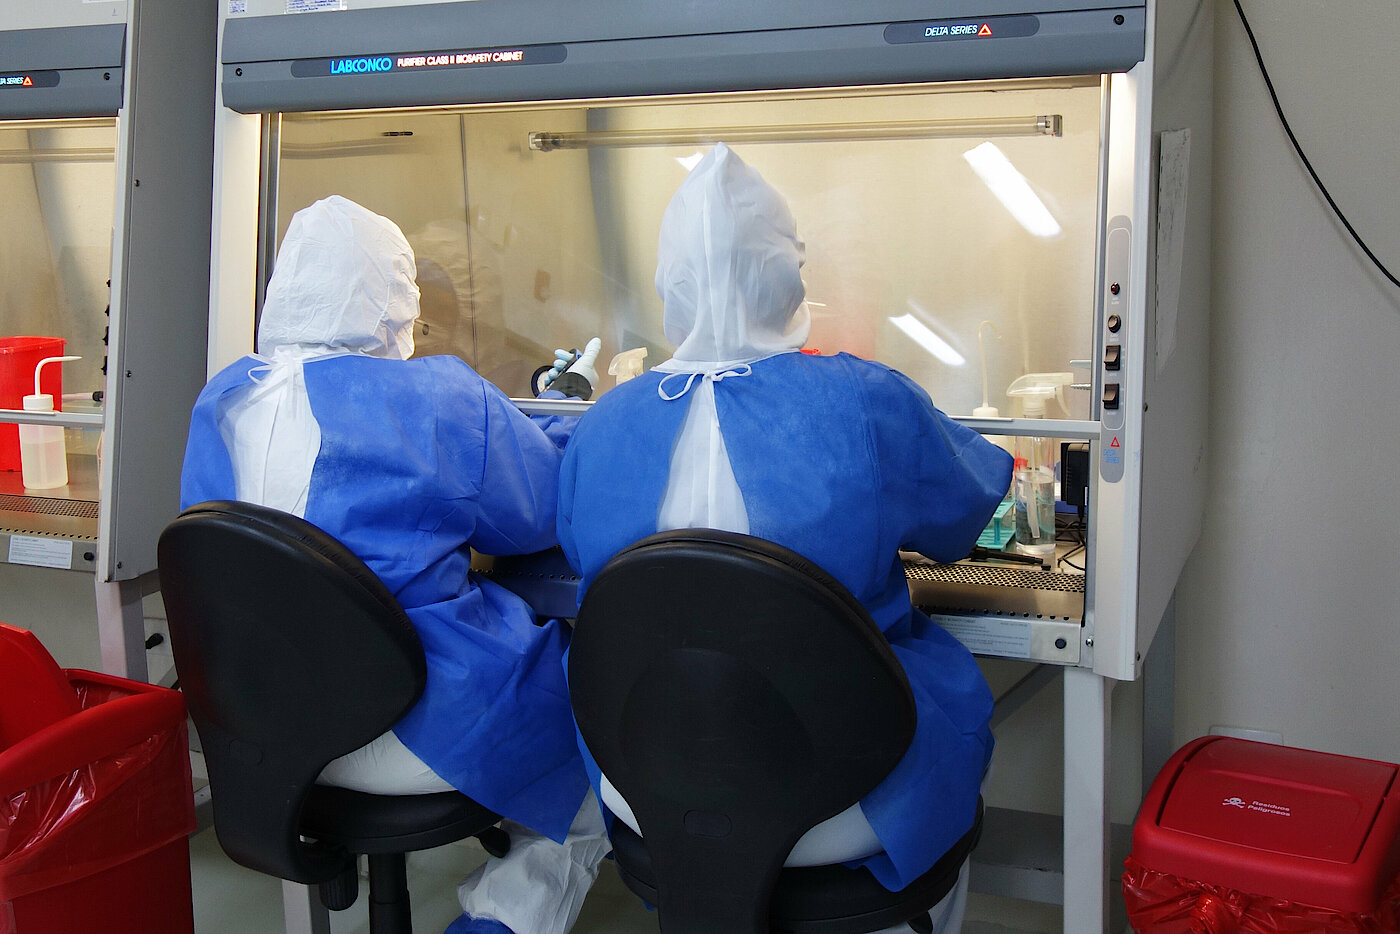 Foto: Zwei Personen in Schutzkleidung arbeiten mit ihren Händen in einem kleinen Labor mit Glasfront.